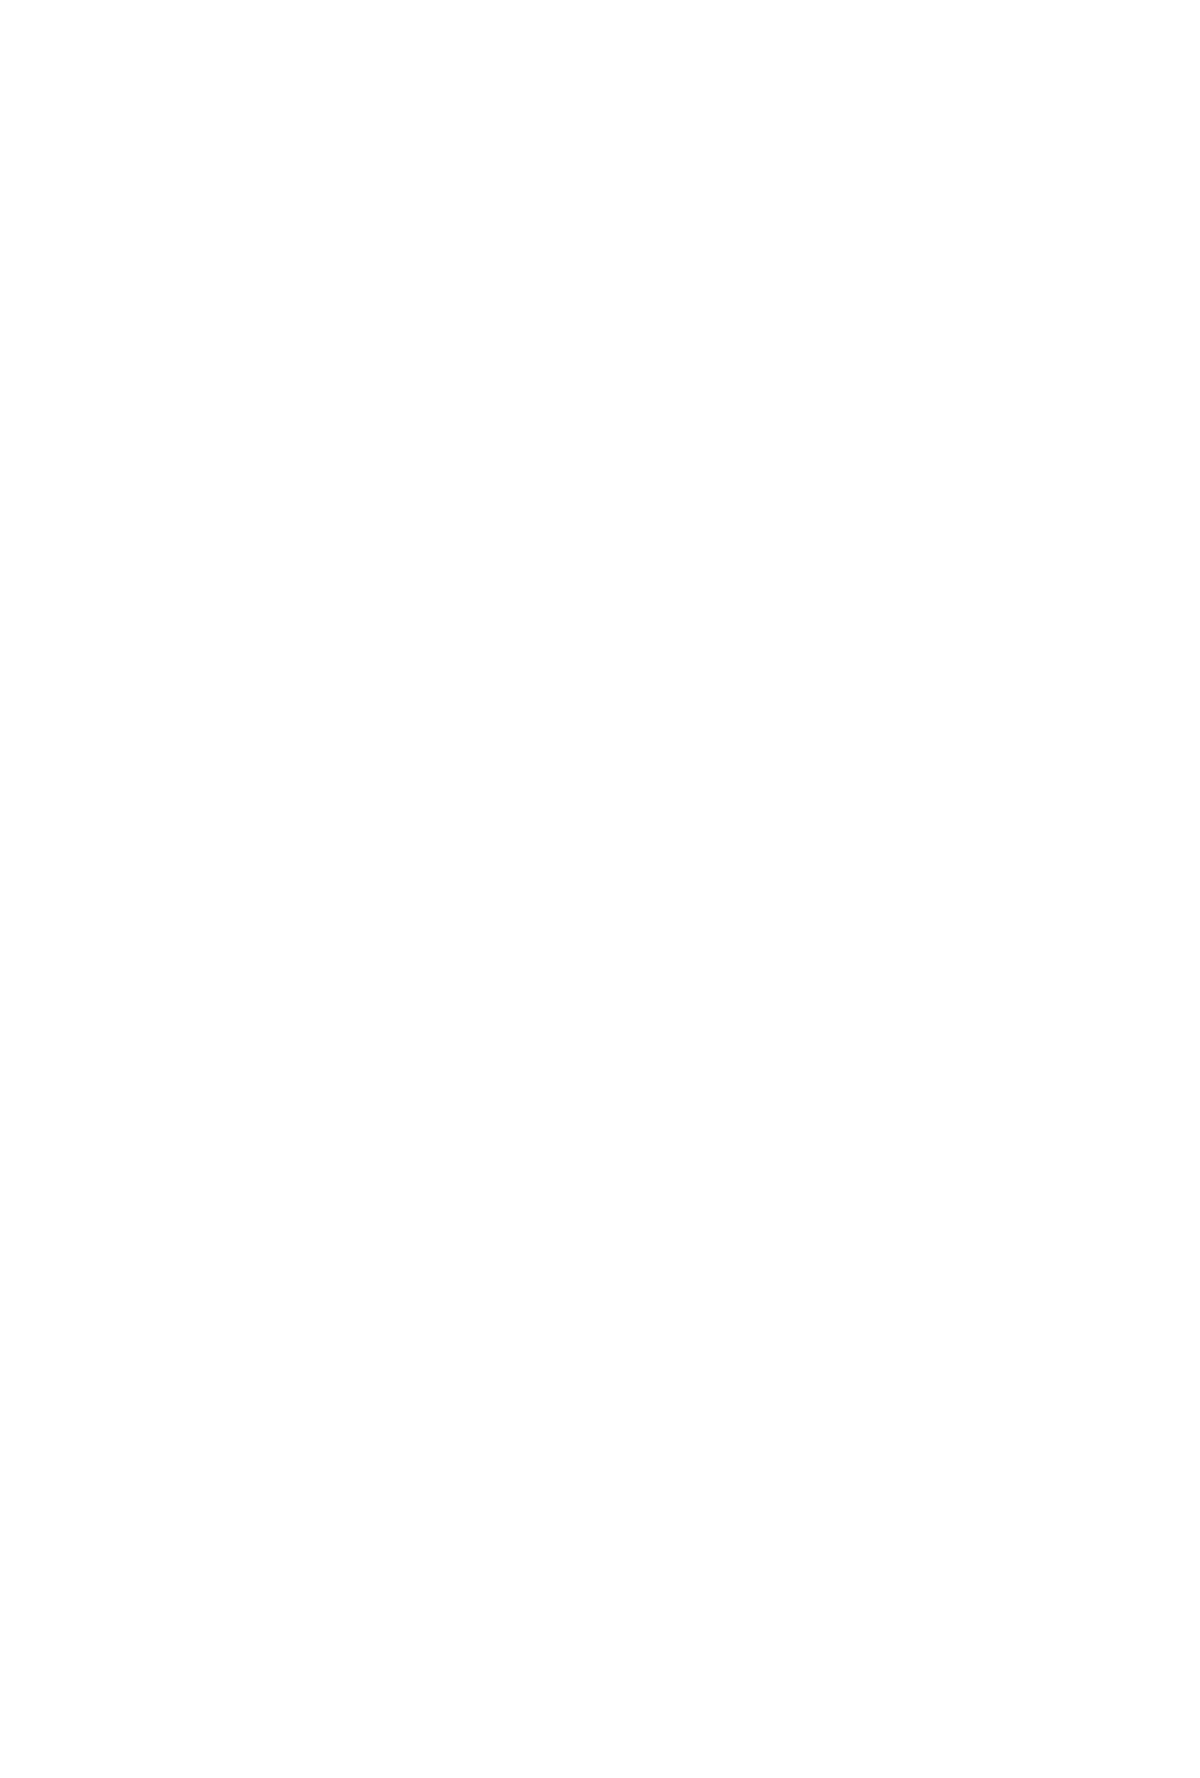 (エターナルカノン1) [やまぐち楼 (やまぐちしんじ)] 禁忌Ⅱ THE WORKS OF SHINJI YAMAGUCHI (るろうに剣心 -明治剣客浪漫譚-)